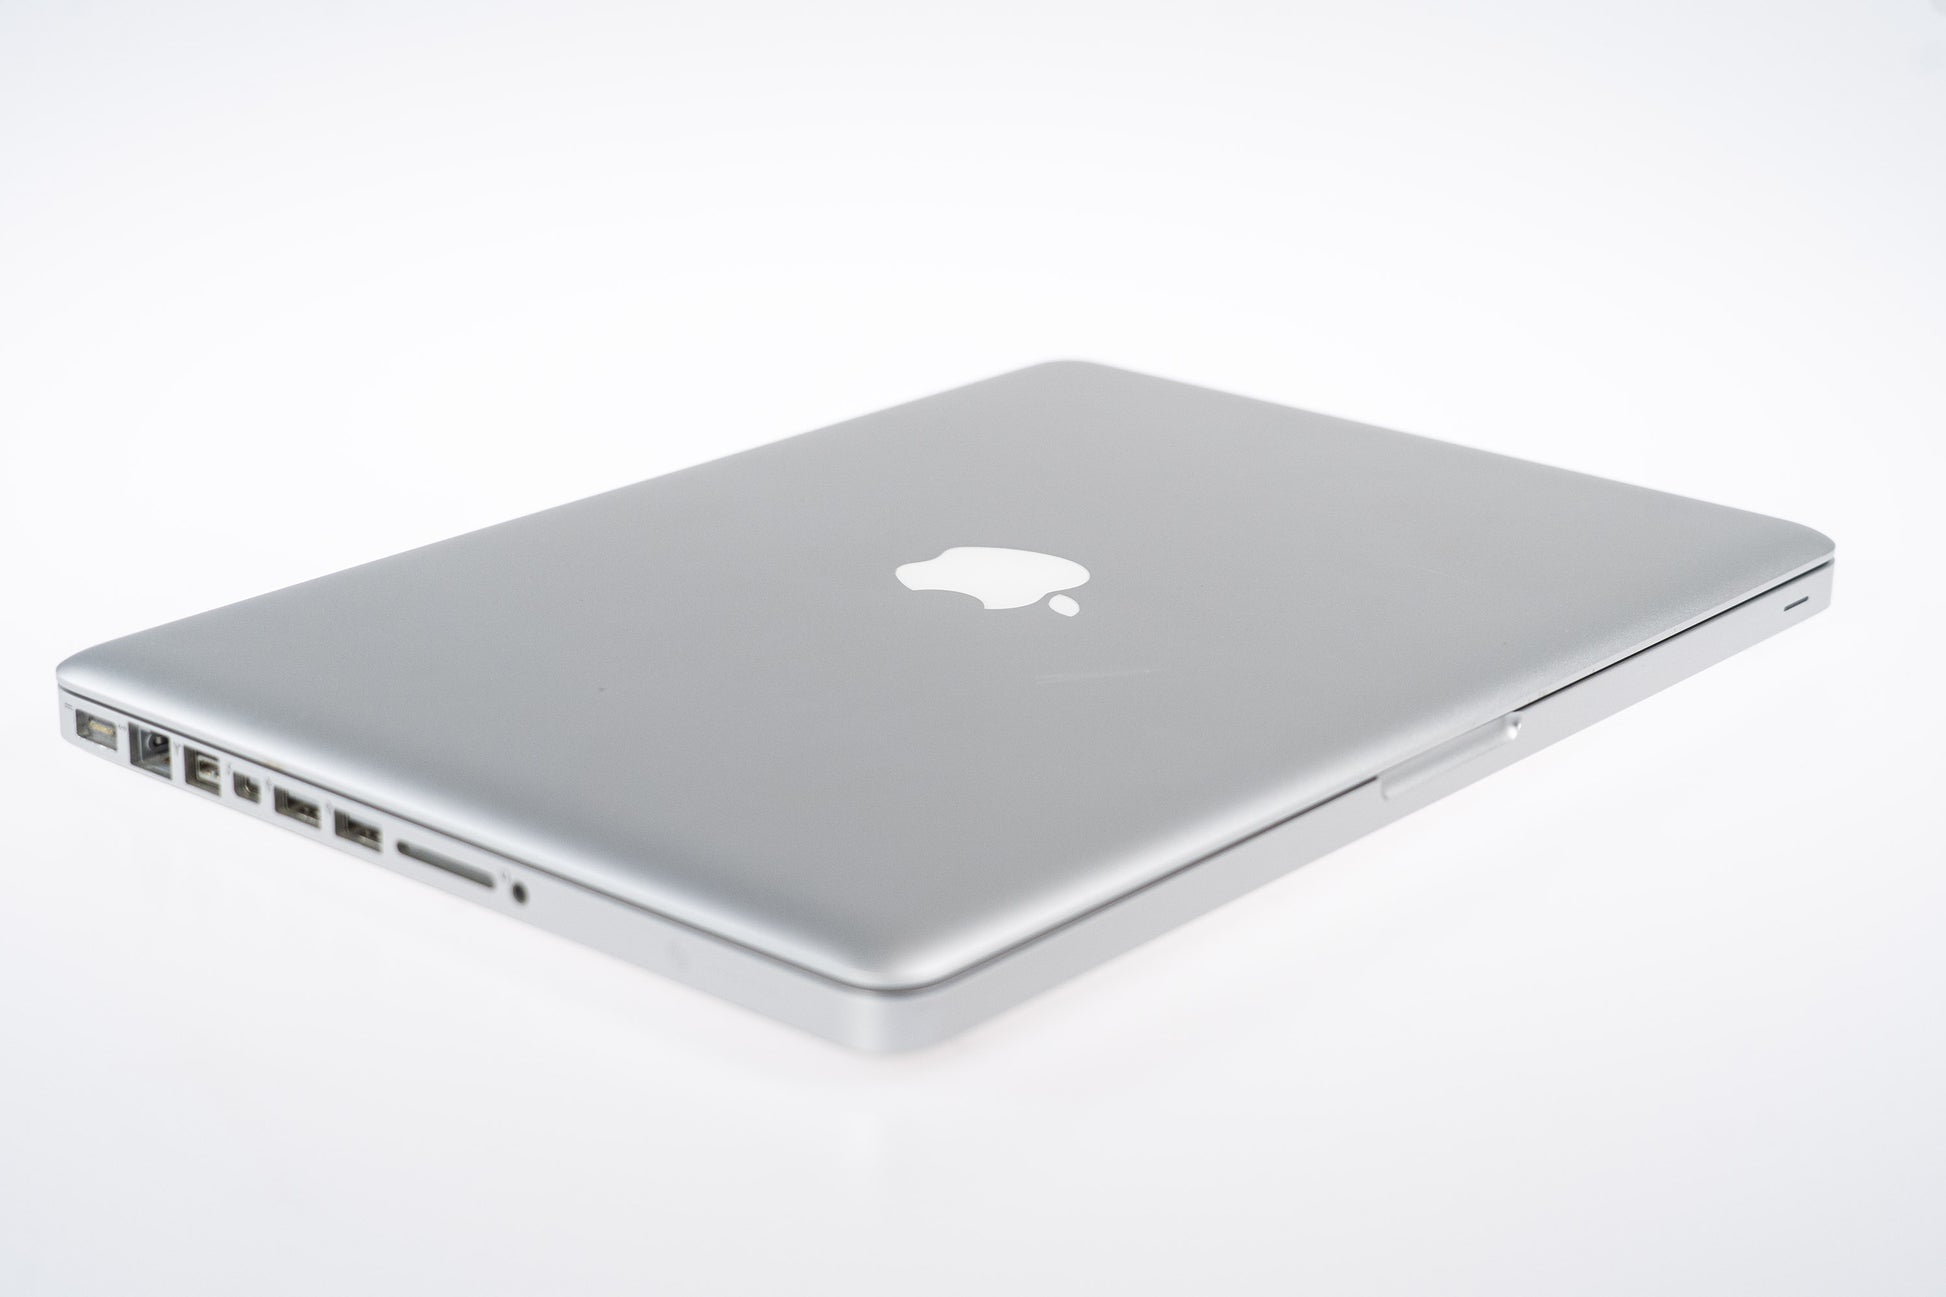 Apple MacBook Pro (15-inch Mid 2012) 2.7 GHz I7-3820QM 8GB 750GB HDD (Silver)